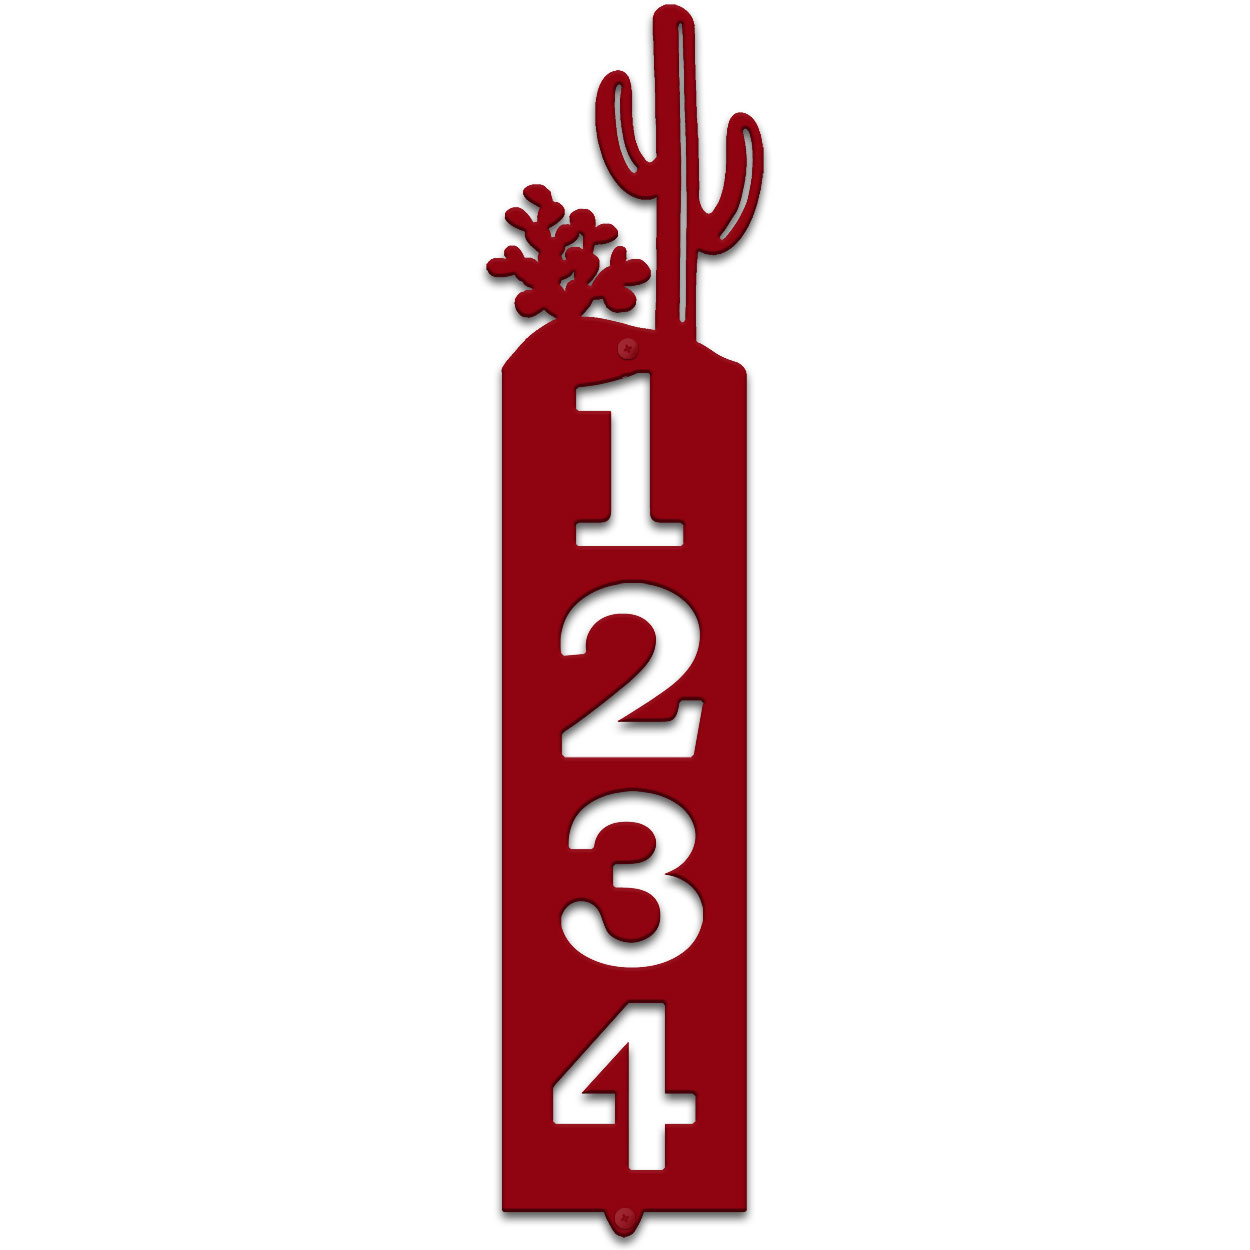 635044 - Cactus Cut Outs Four Digit Address Number Plaque